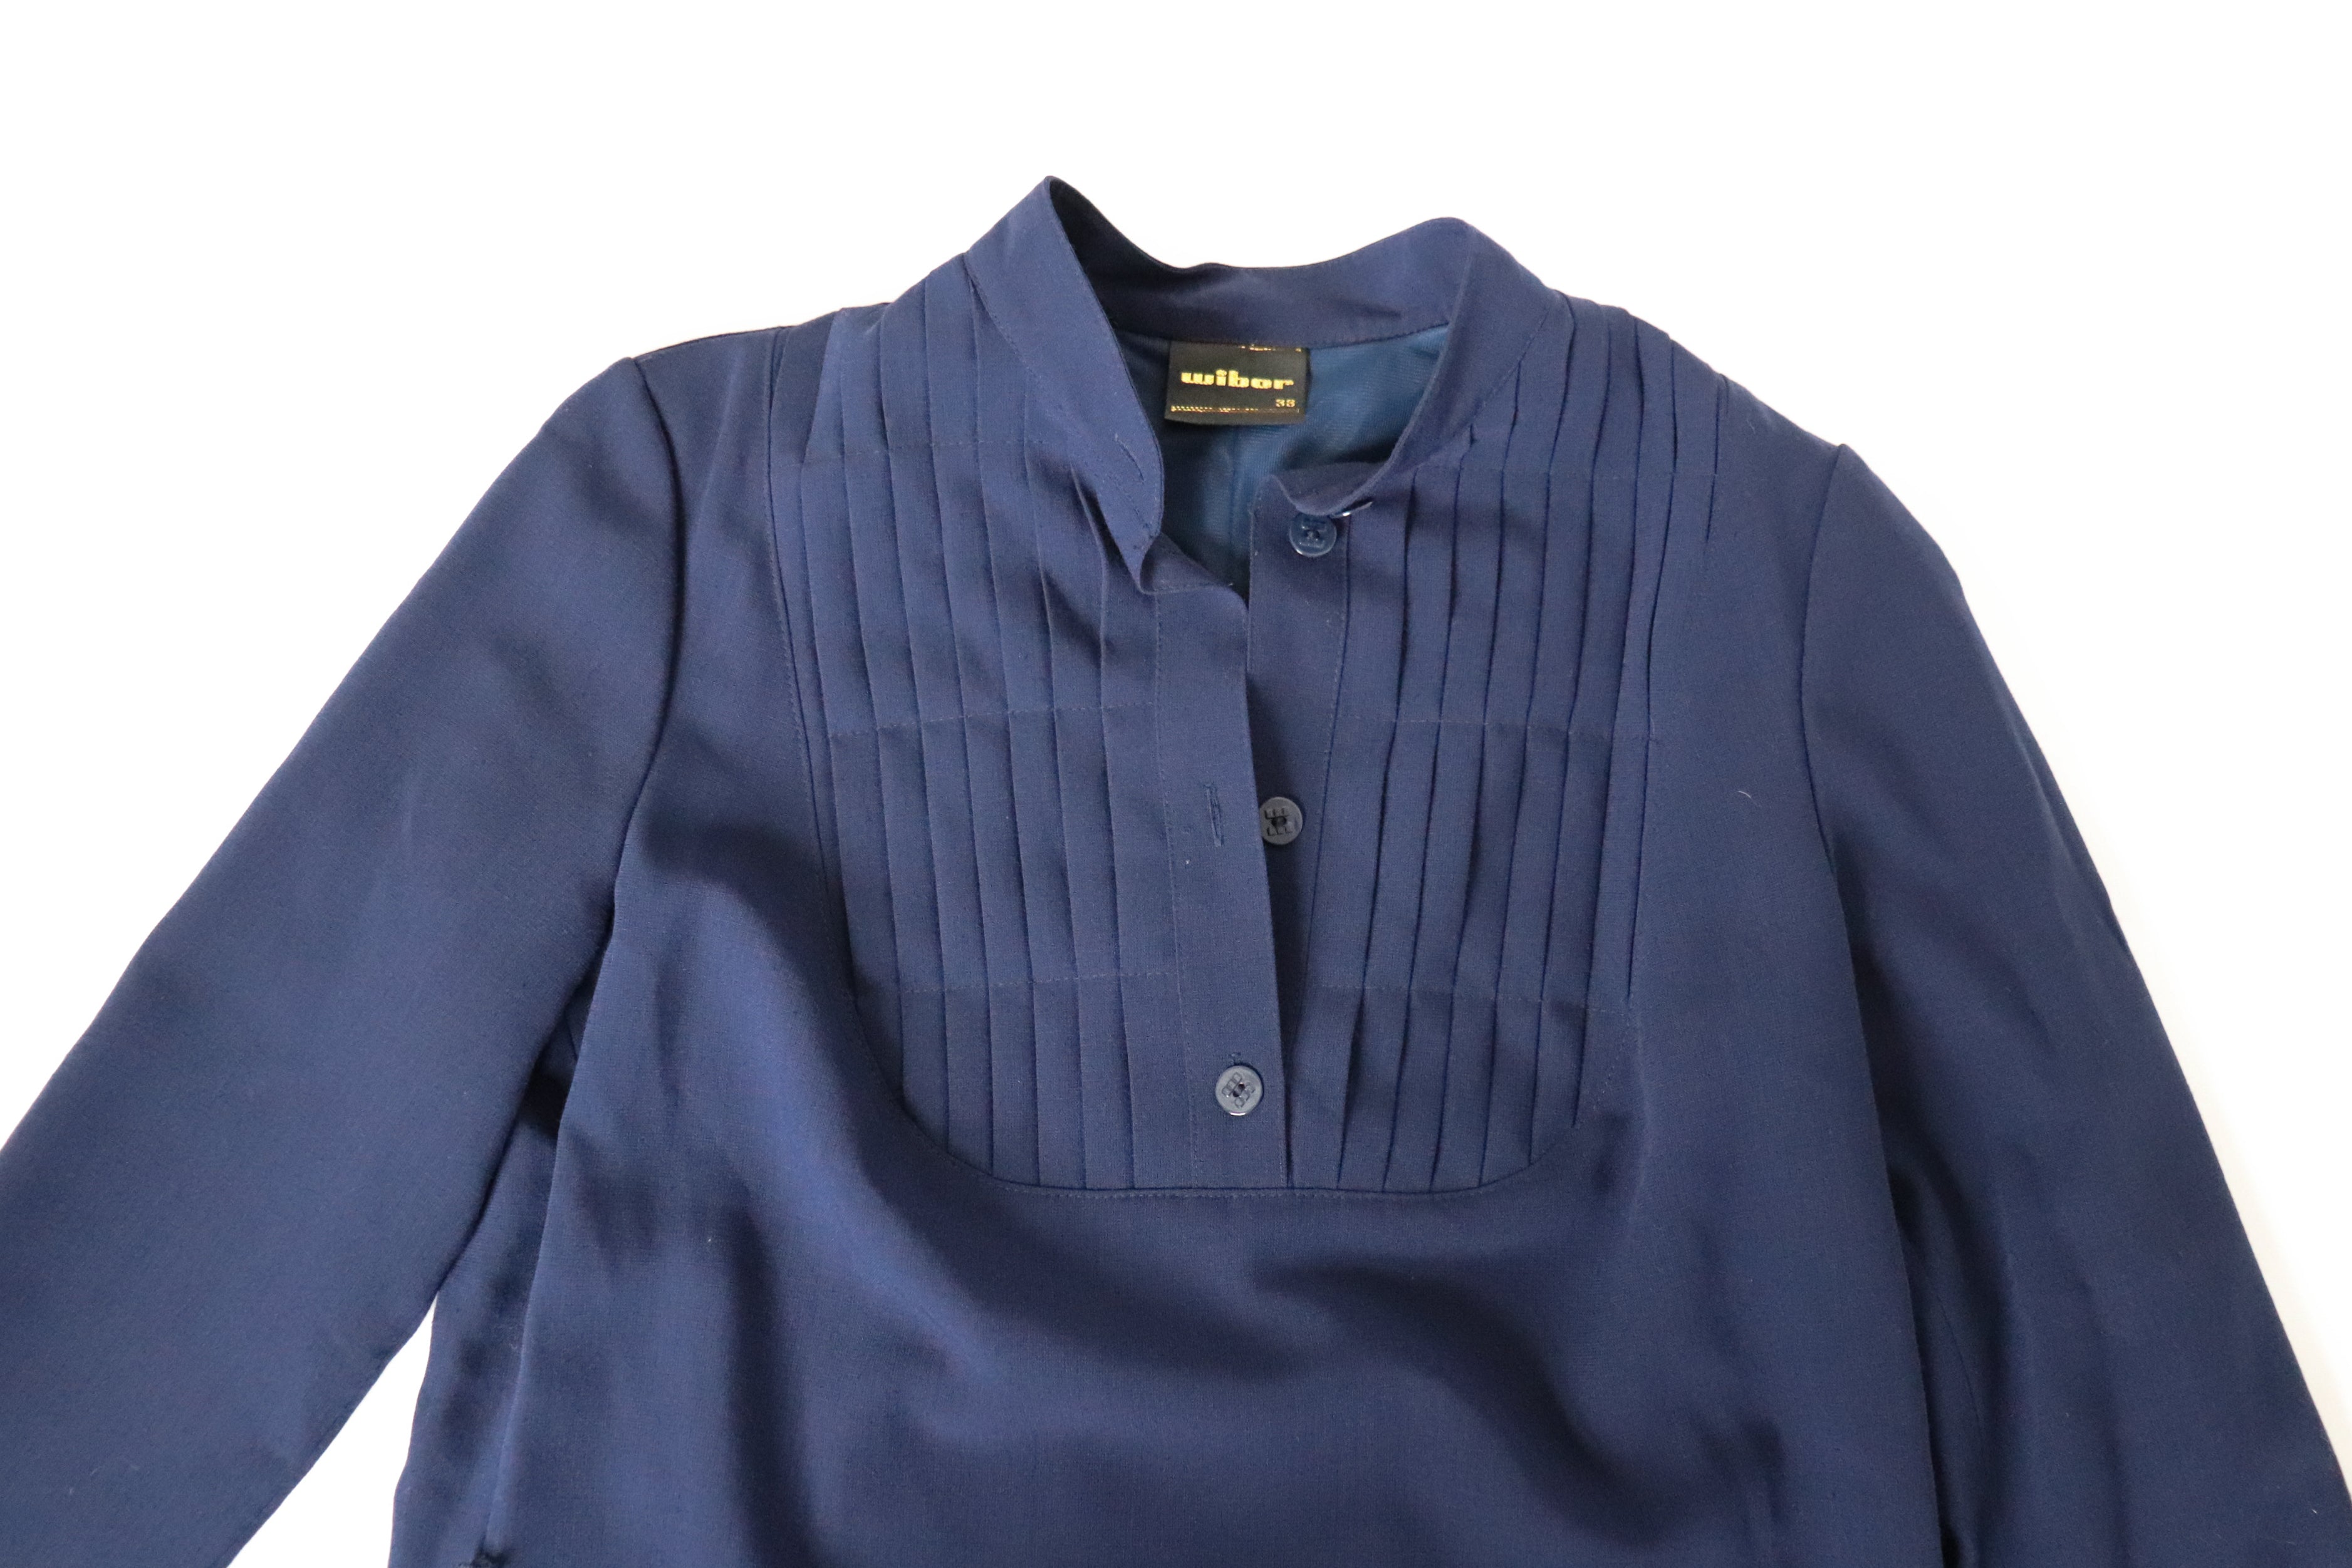 Shirt Dress - Vintage Belted Dress - Long Sleeve - Blue - WIBOR - M / UK 12